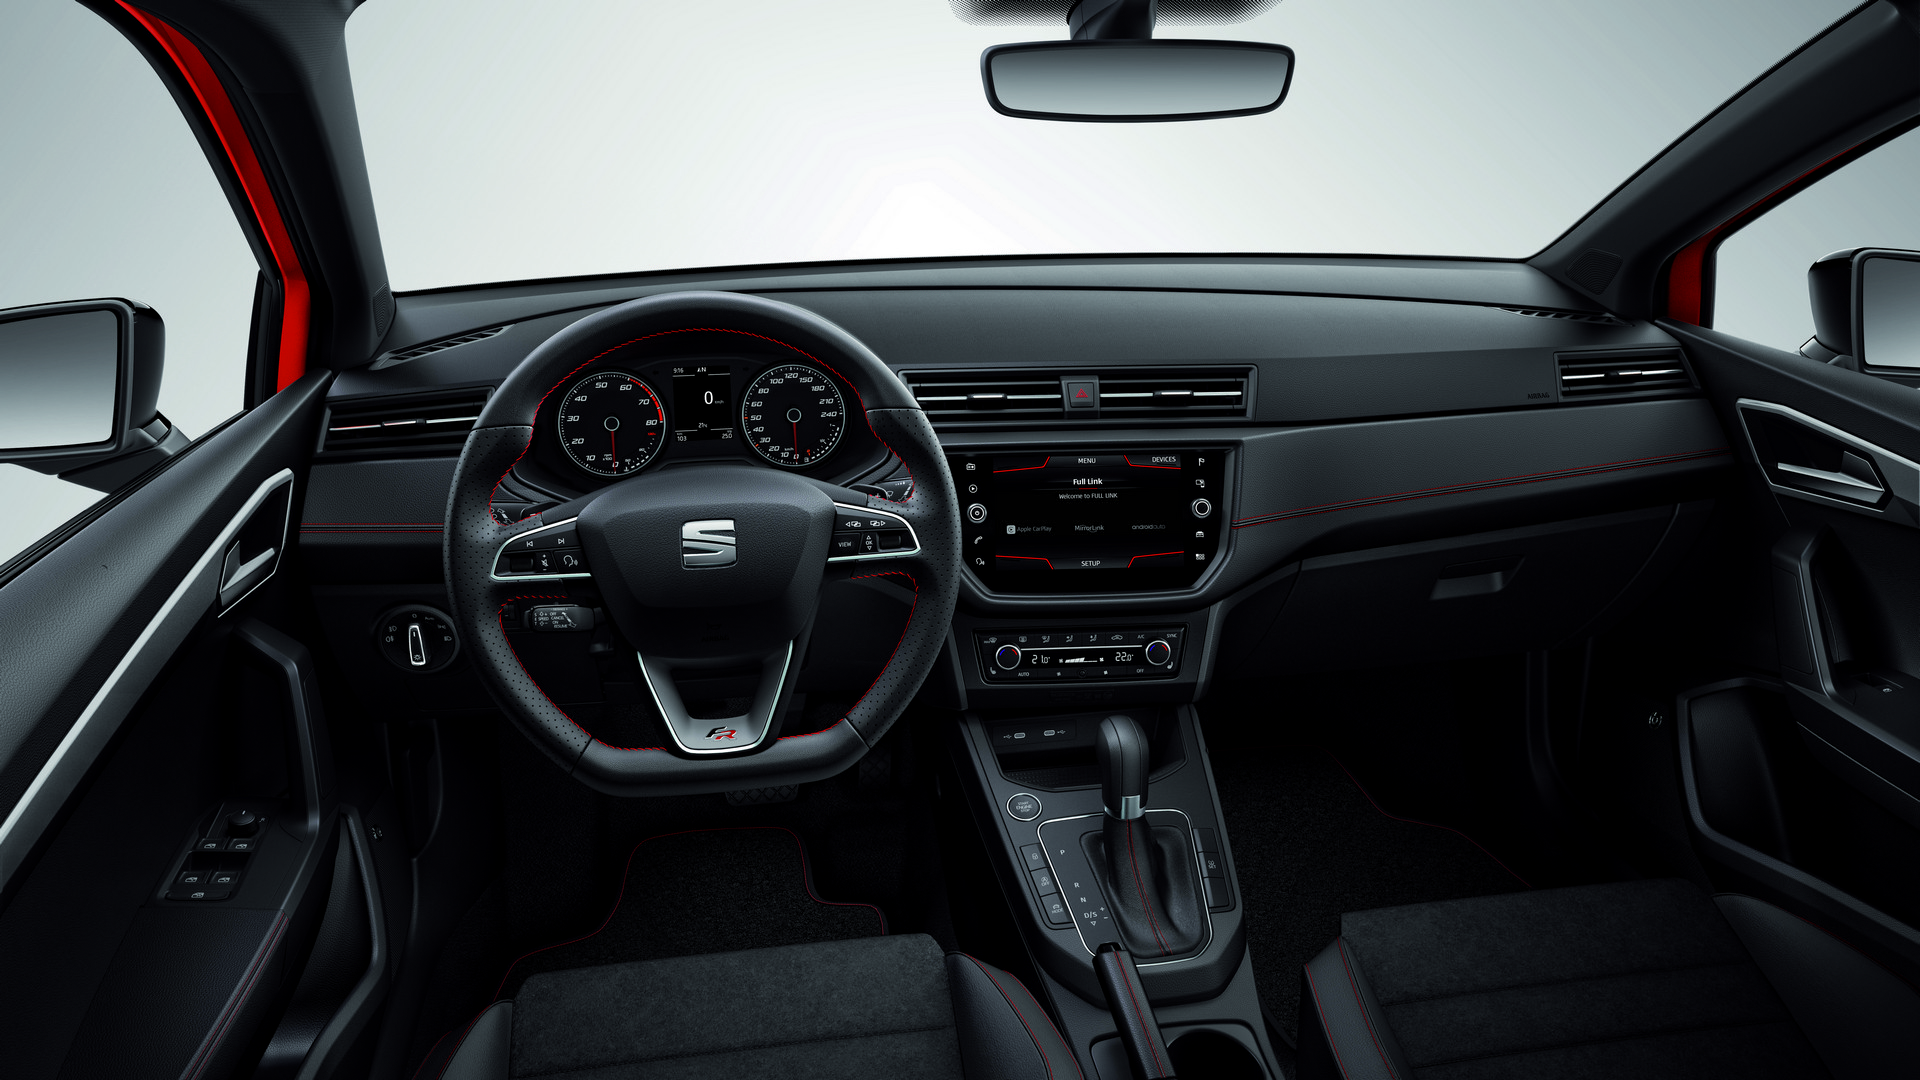 Το Seat Ibiza λαμβάνει την έκδοση 1.5 TSI με αυτόματο κιβώτιο DSG 7 ταχυτήτων